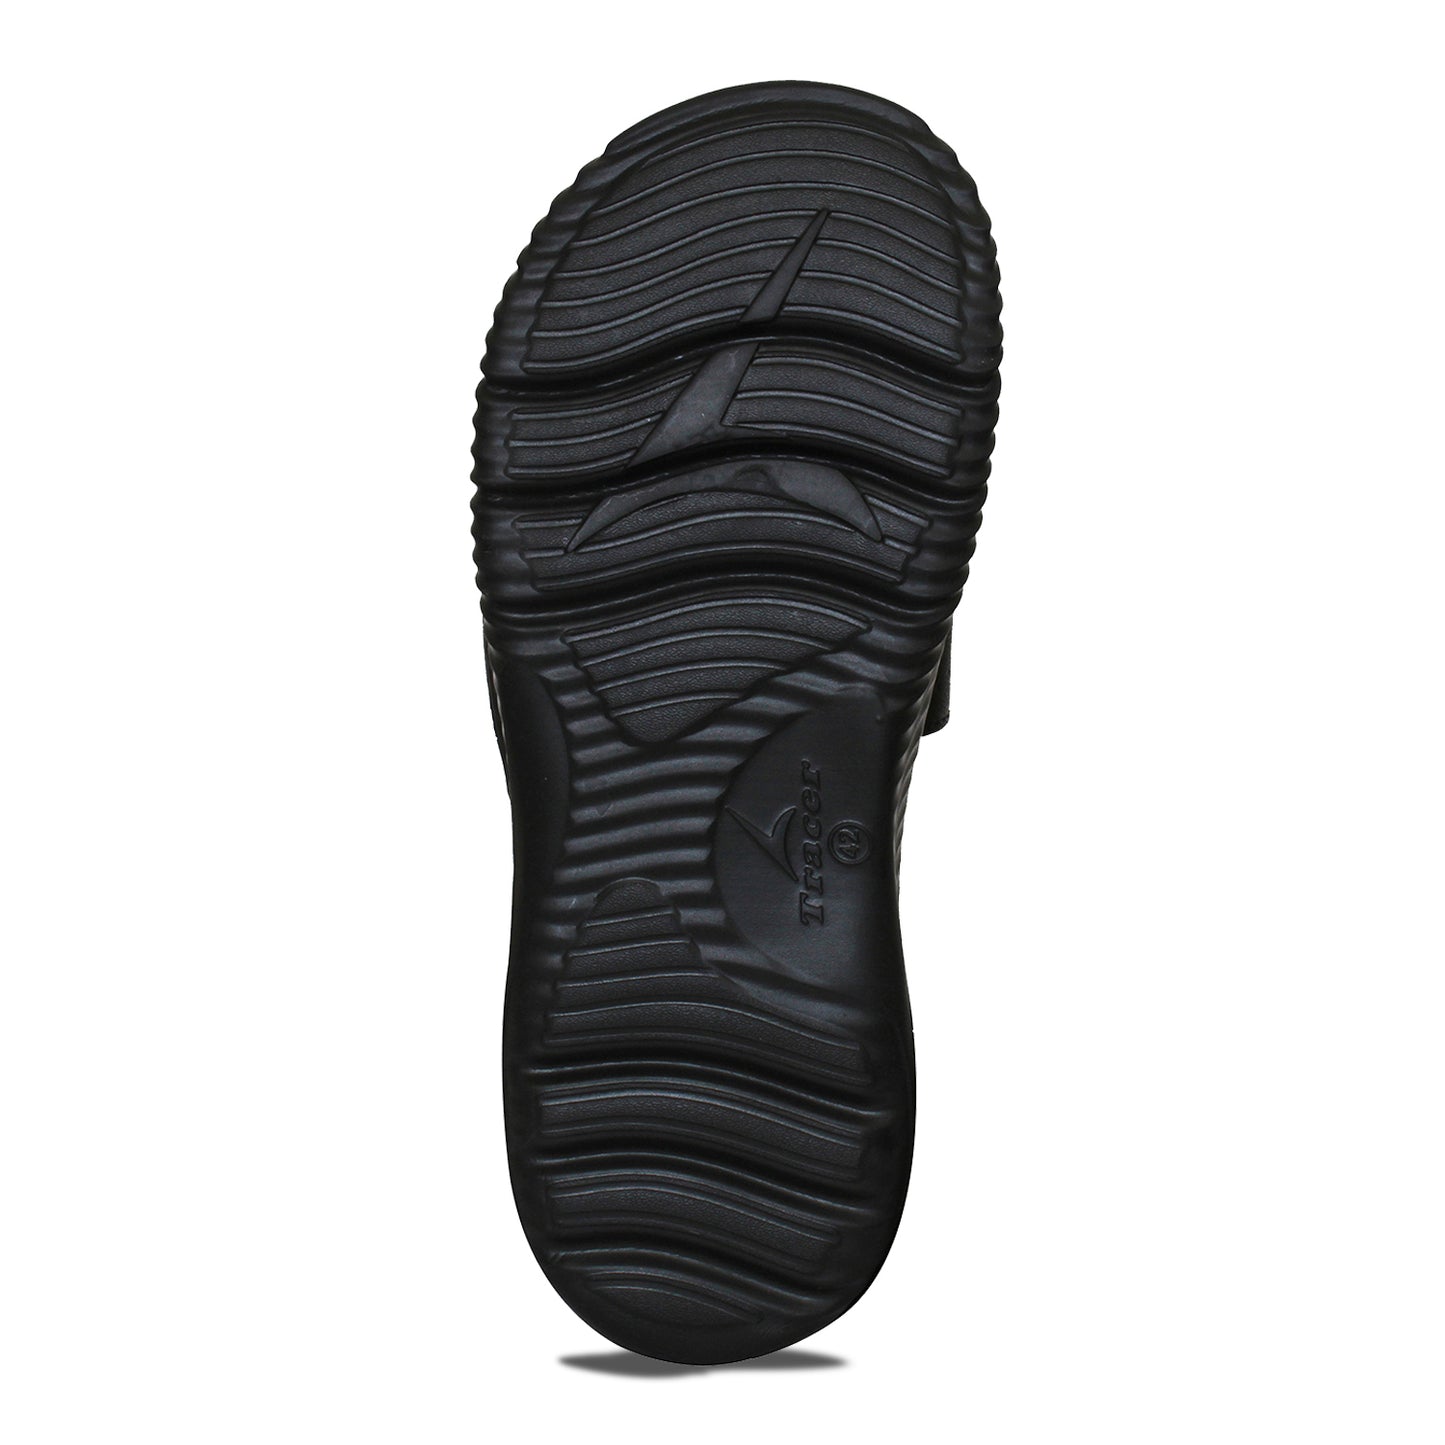  Flat Slippers For Men's Black